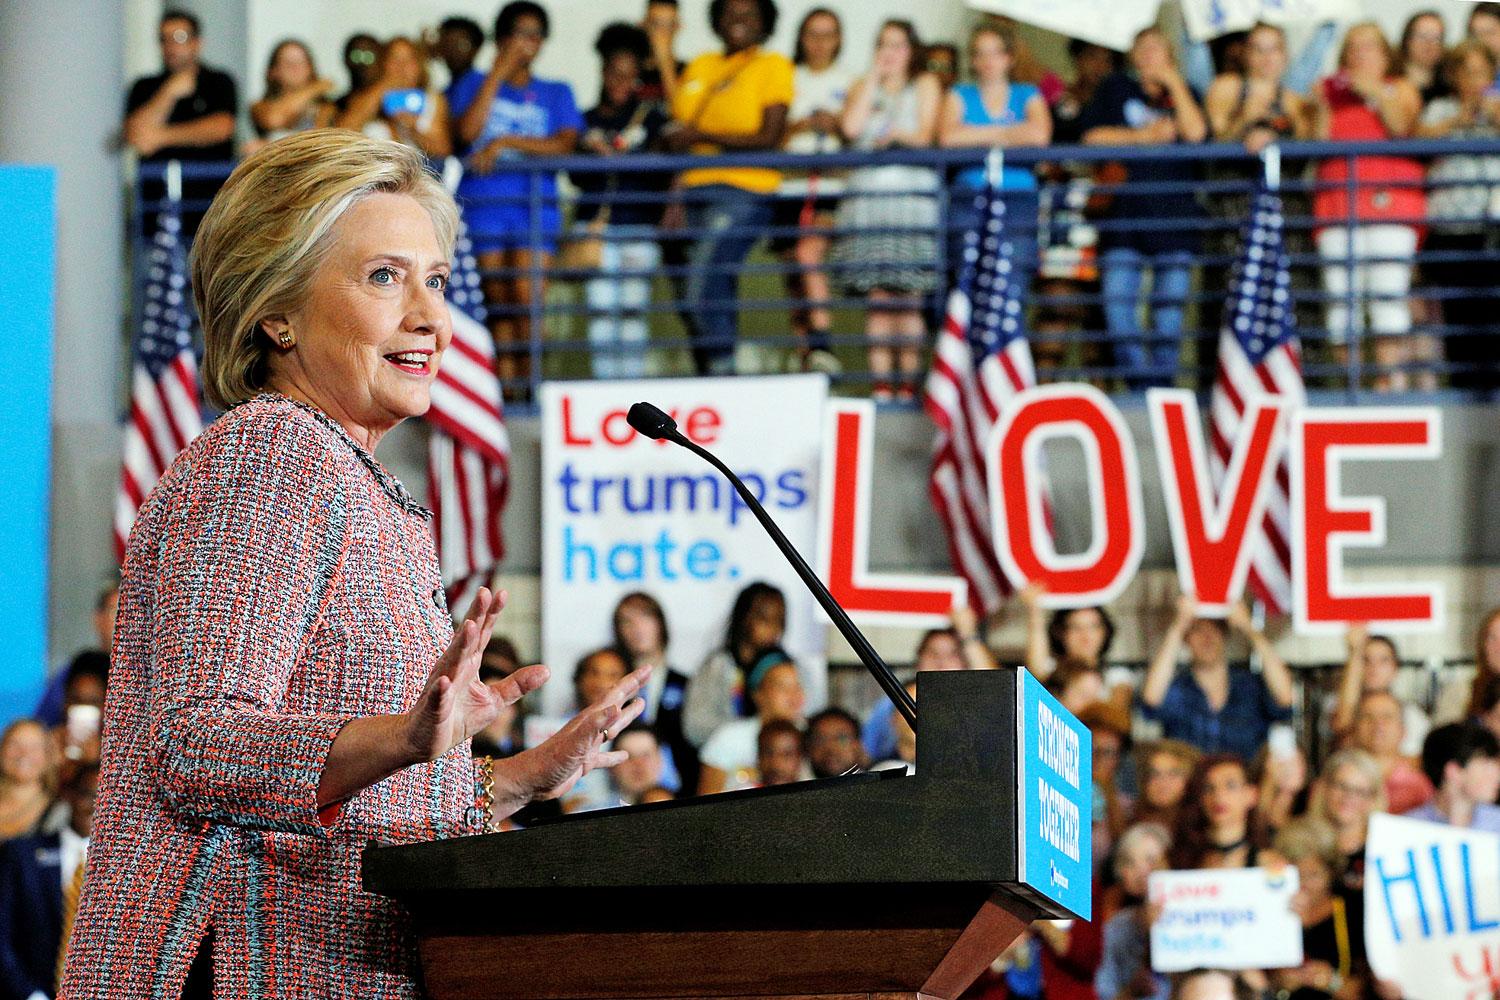 Clinton csütörtökön már kampányrendezvényt tartott